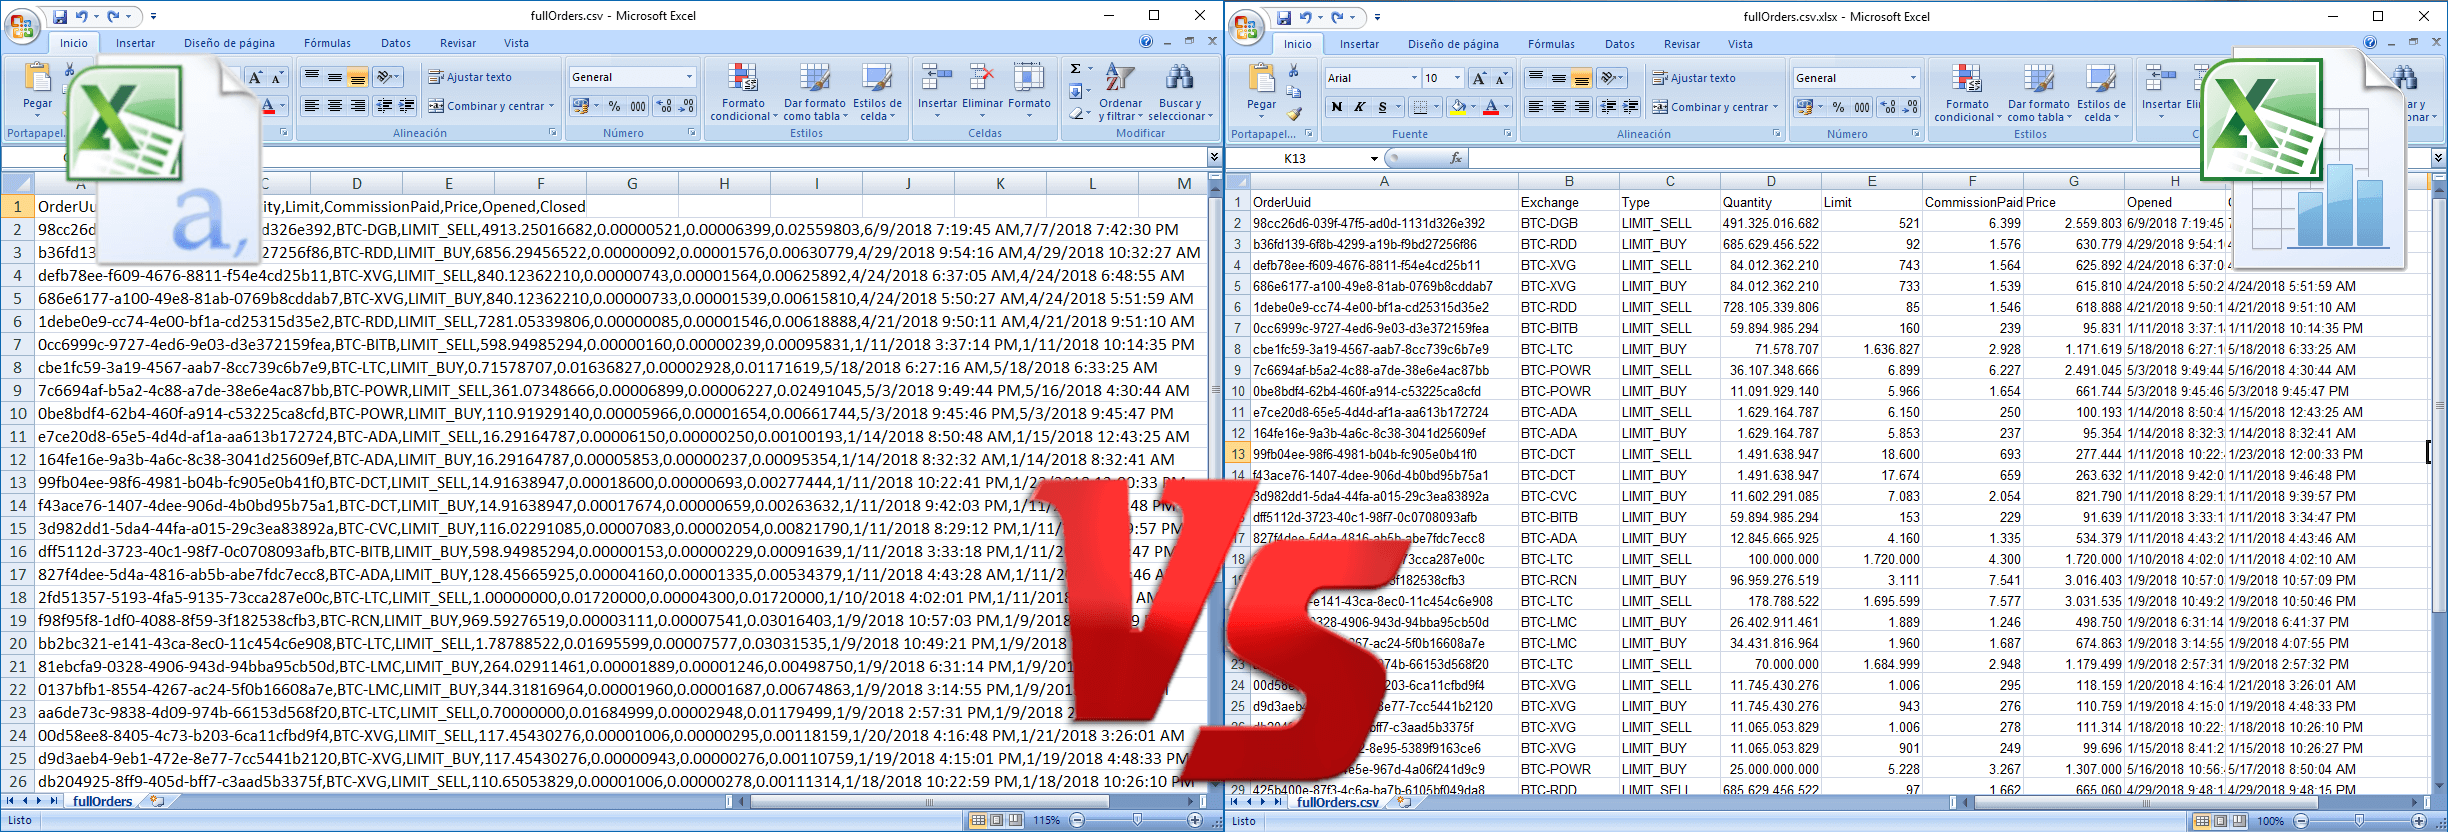 Como Ordenar Los Datos De Una Hoja De Cálculo Csv Con Excel 7133